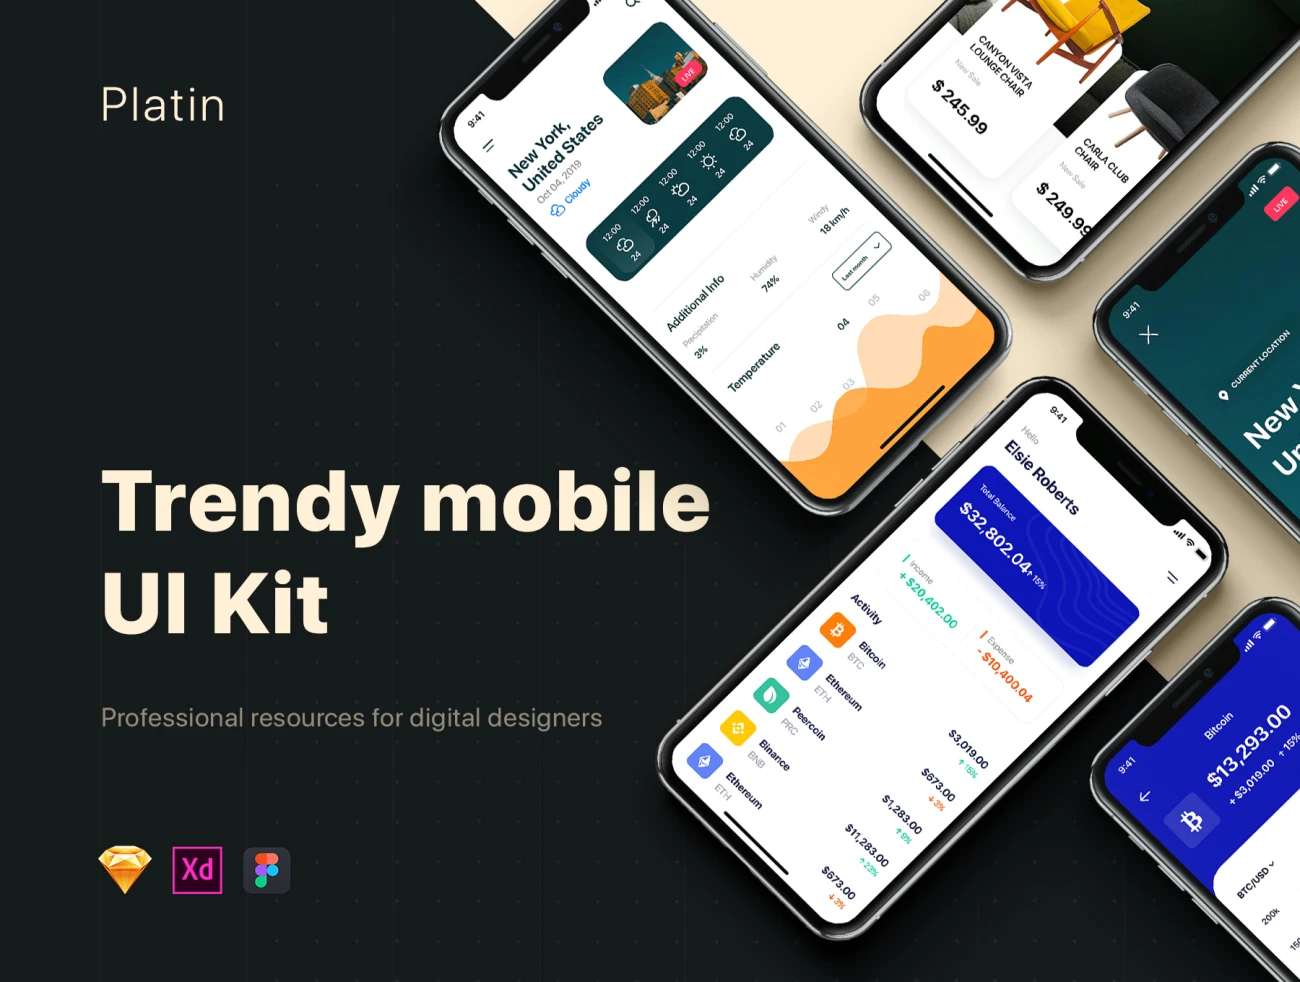 Platin mobile UI Kit 金融理财健身运动旅游出行数据分析移动用户界面设计套件合集-UI/UX-到位啦UI